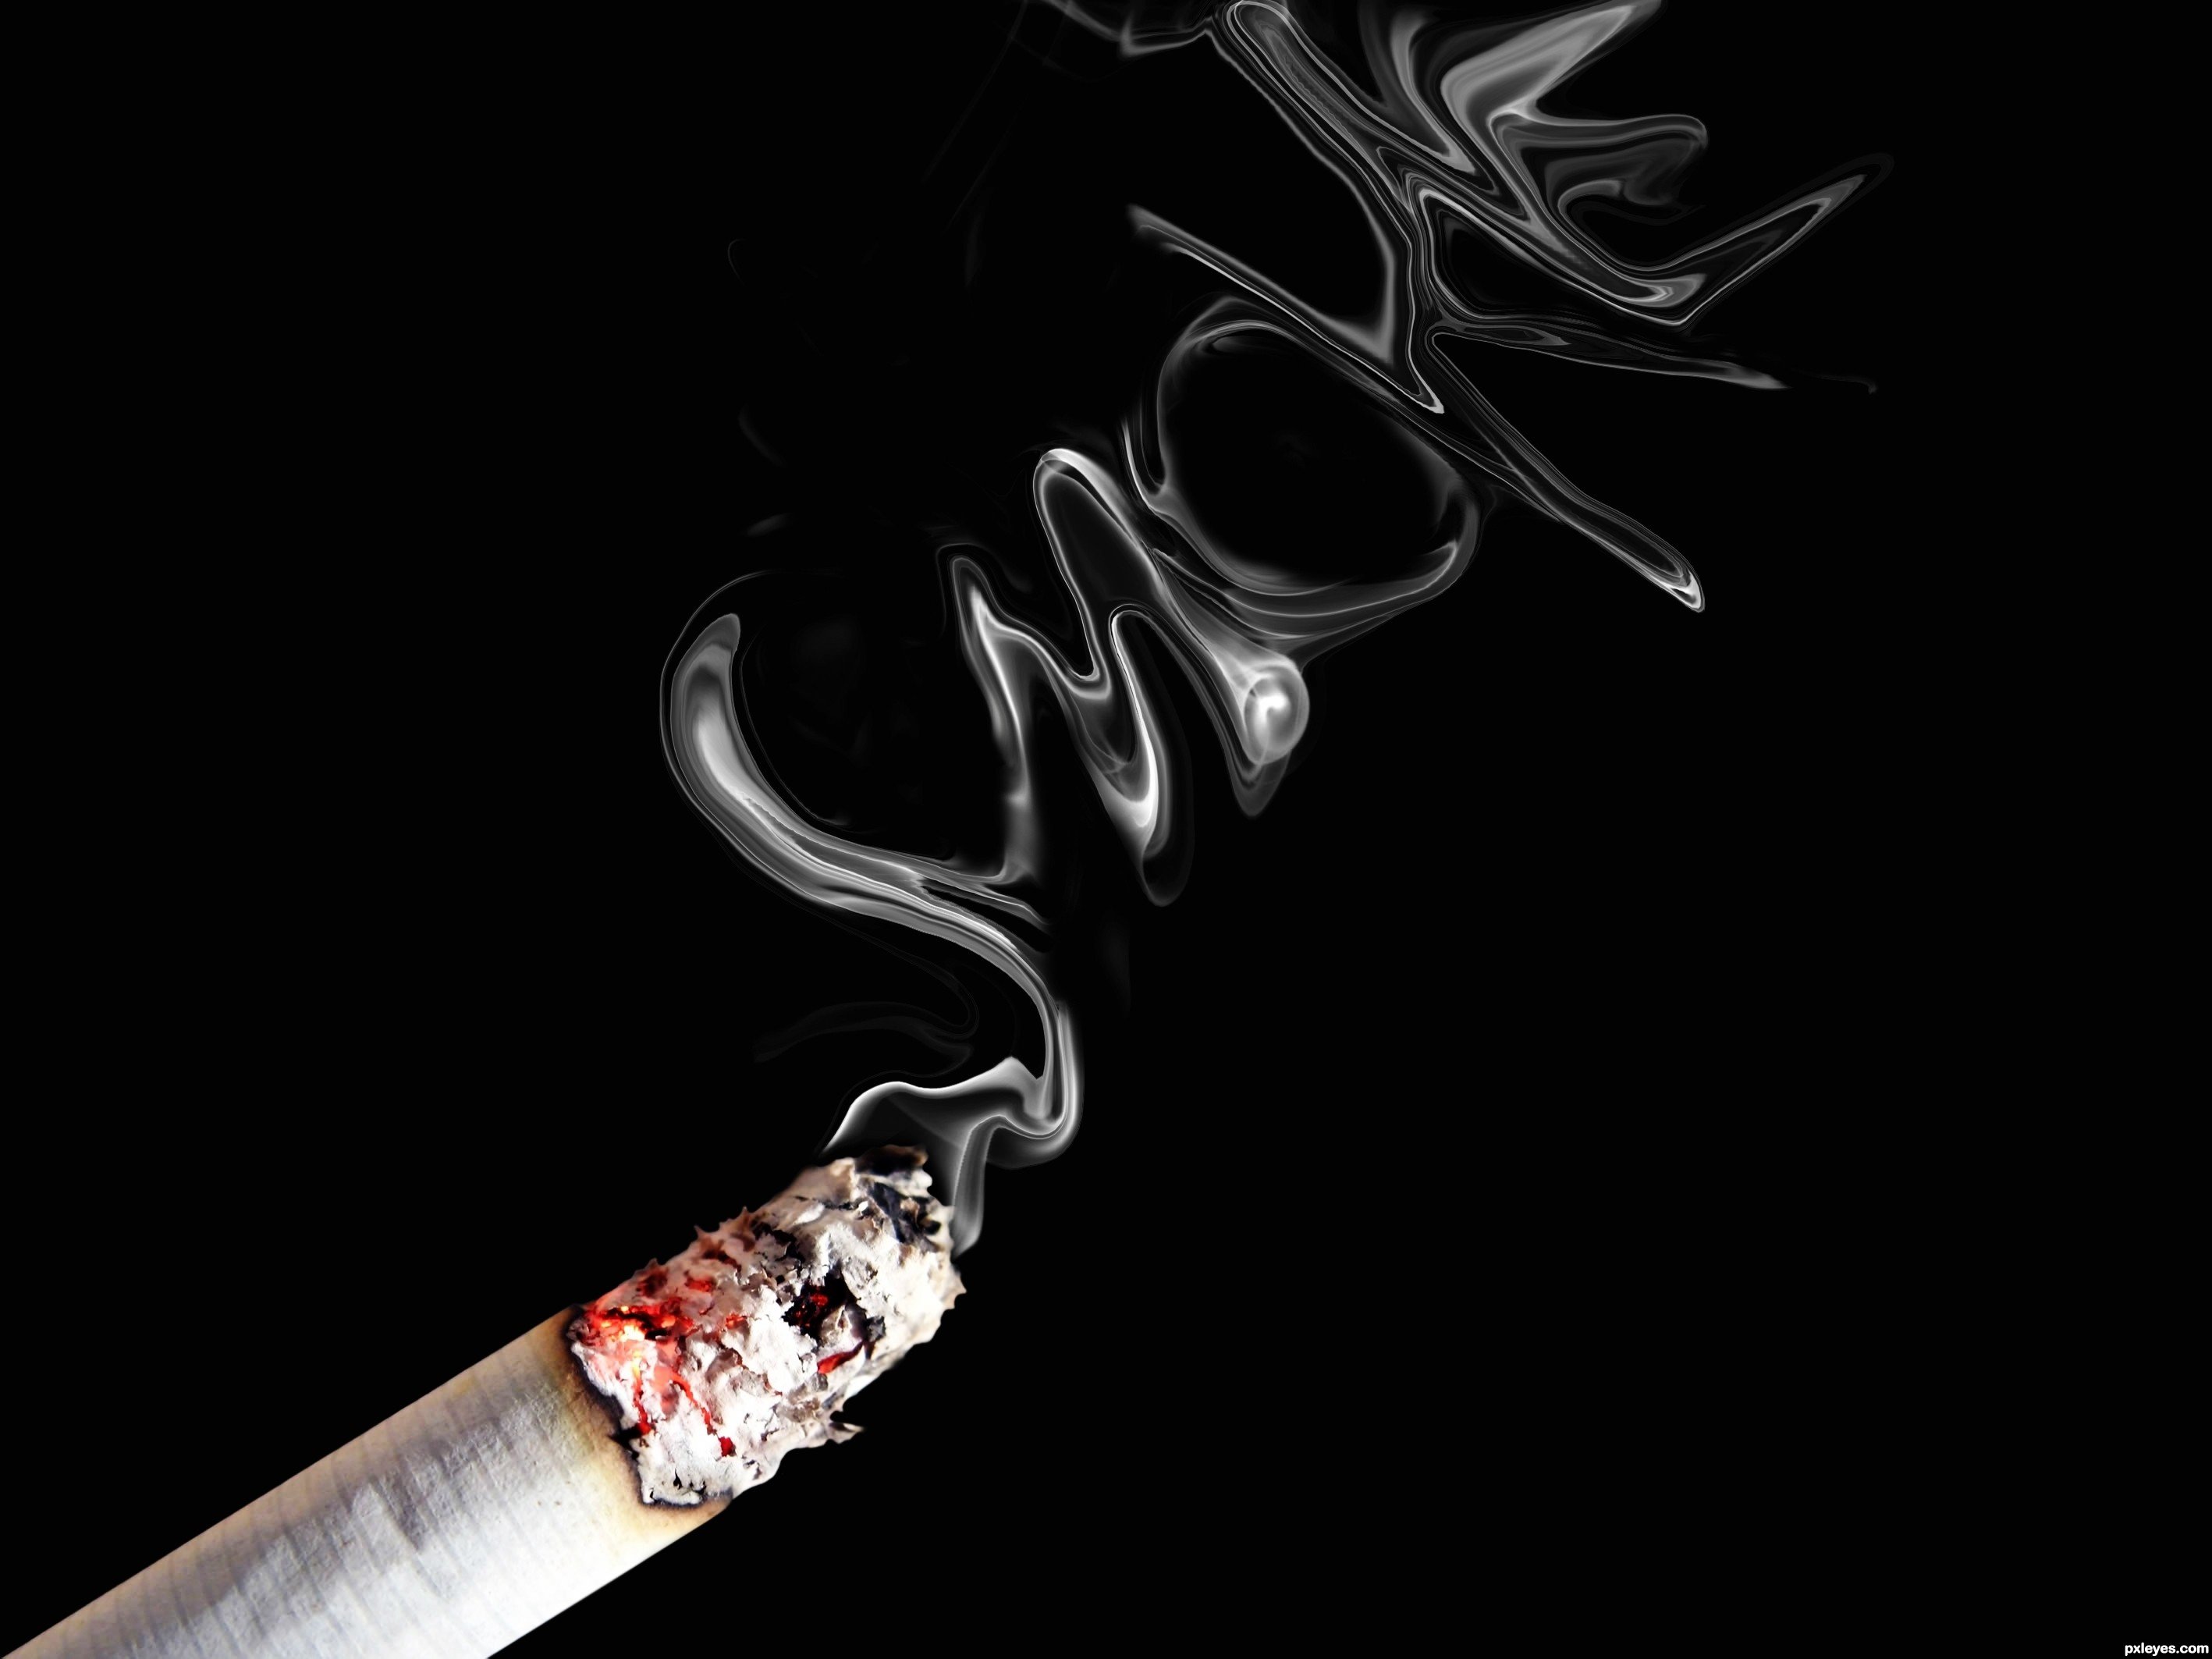 Cigarette Smoke Wallpaper Hd - HD Wallpaper 